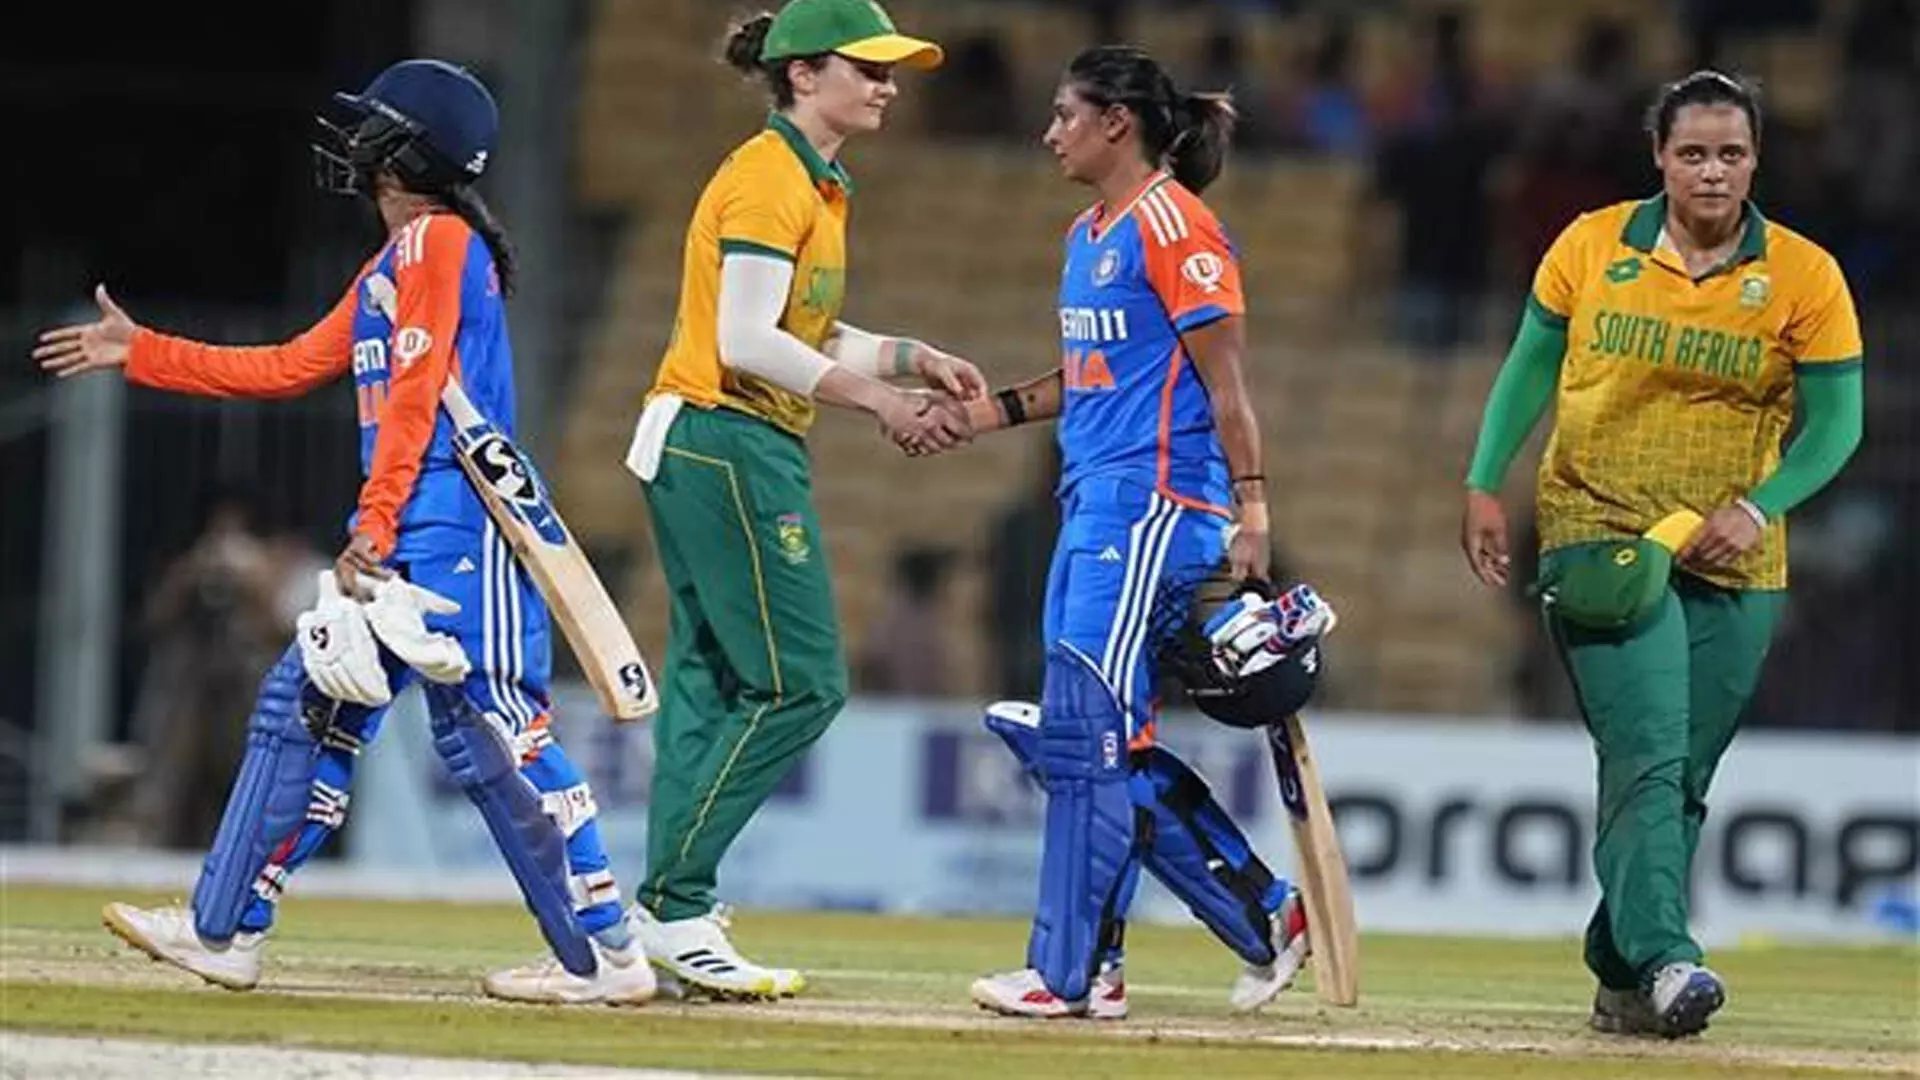 Indian महिला टीम दक्षिण अफ्रीका के खिलाफ दूसरे टी20 मैच में वापसी की उम्मीद में